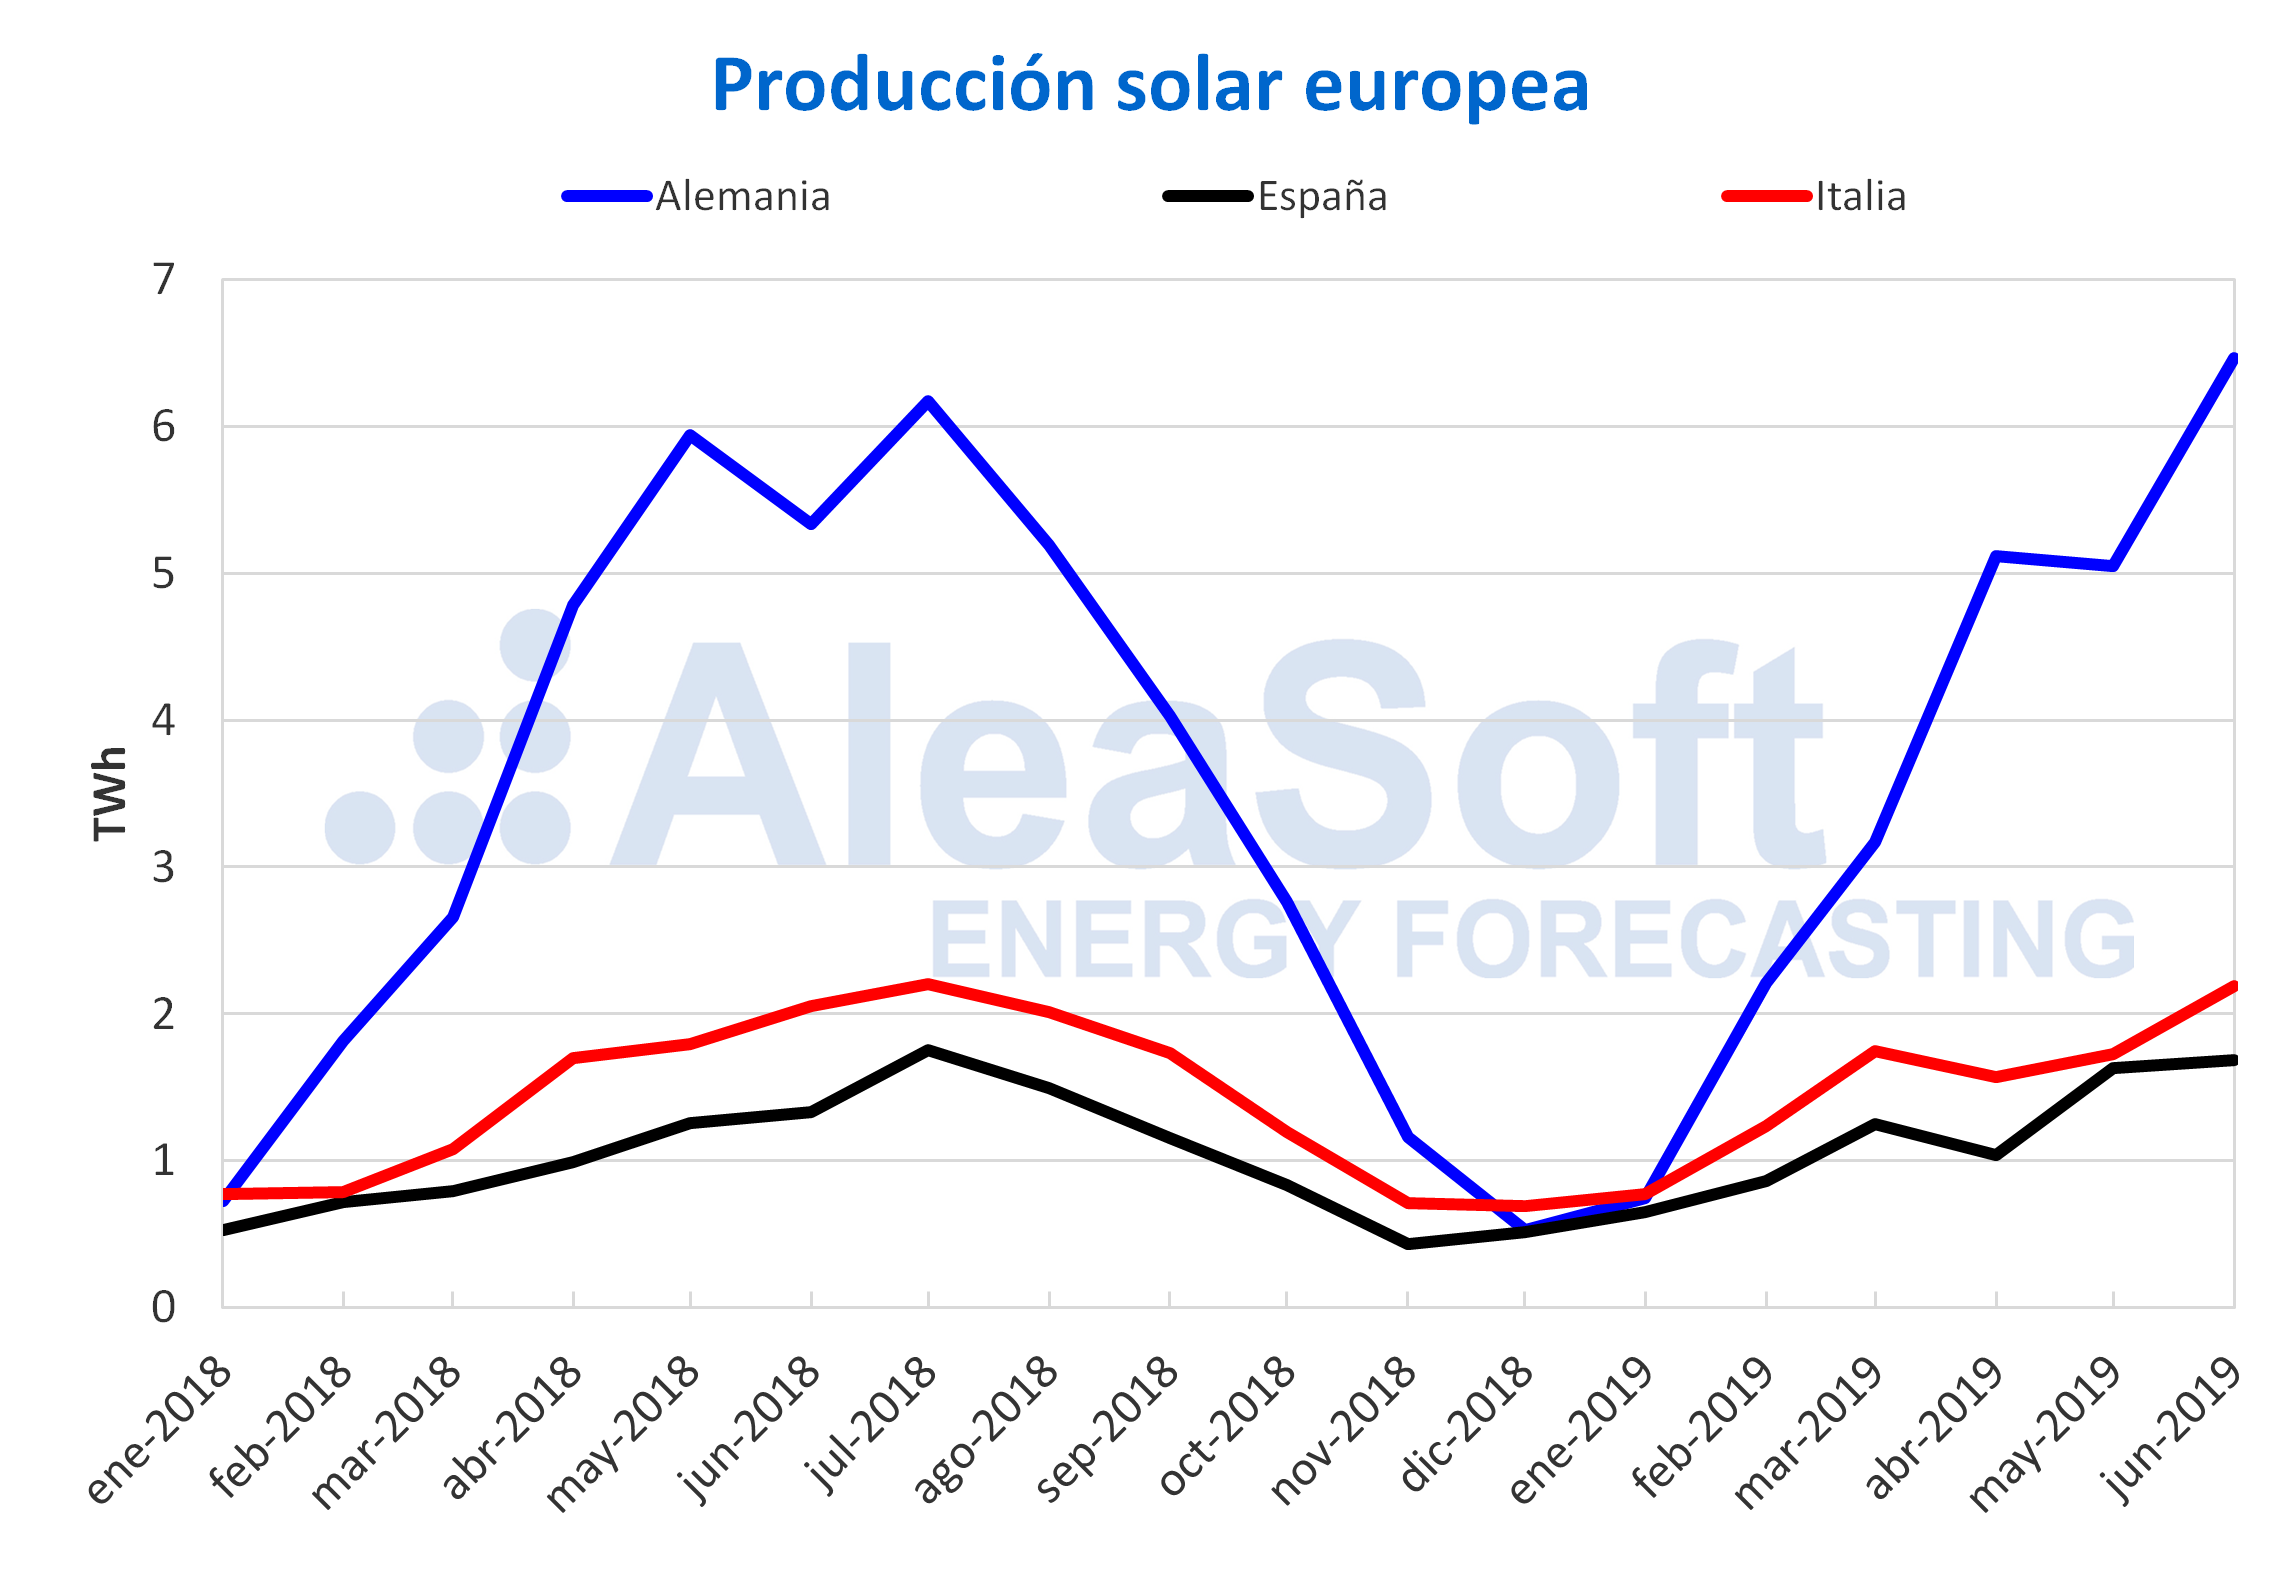 AleaSoft - Produccion mensual solar fotovoltaica termosolar electricidad Europa